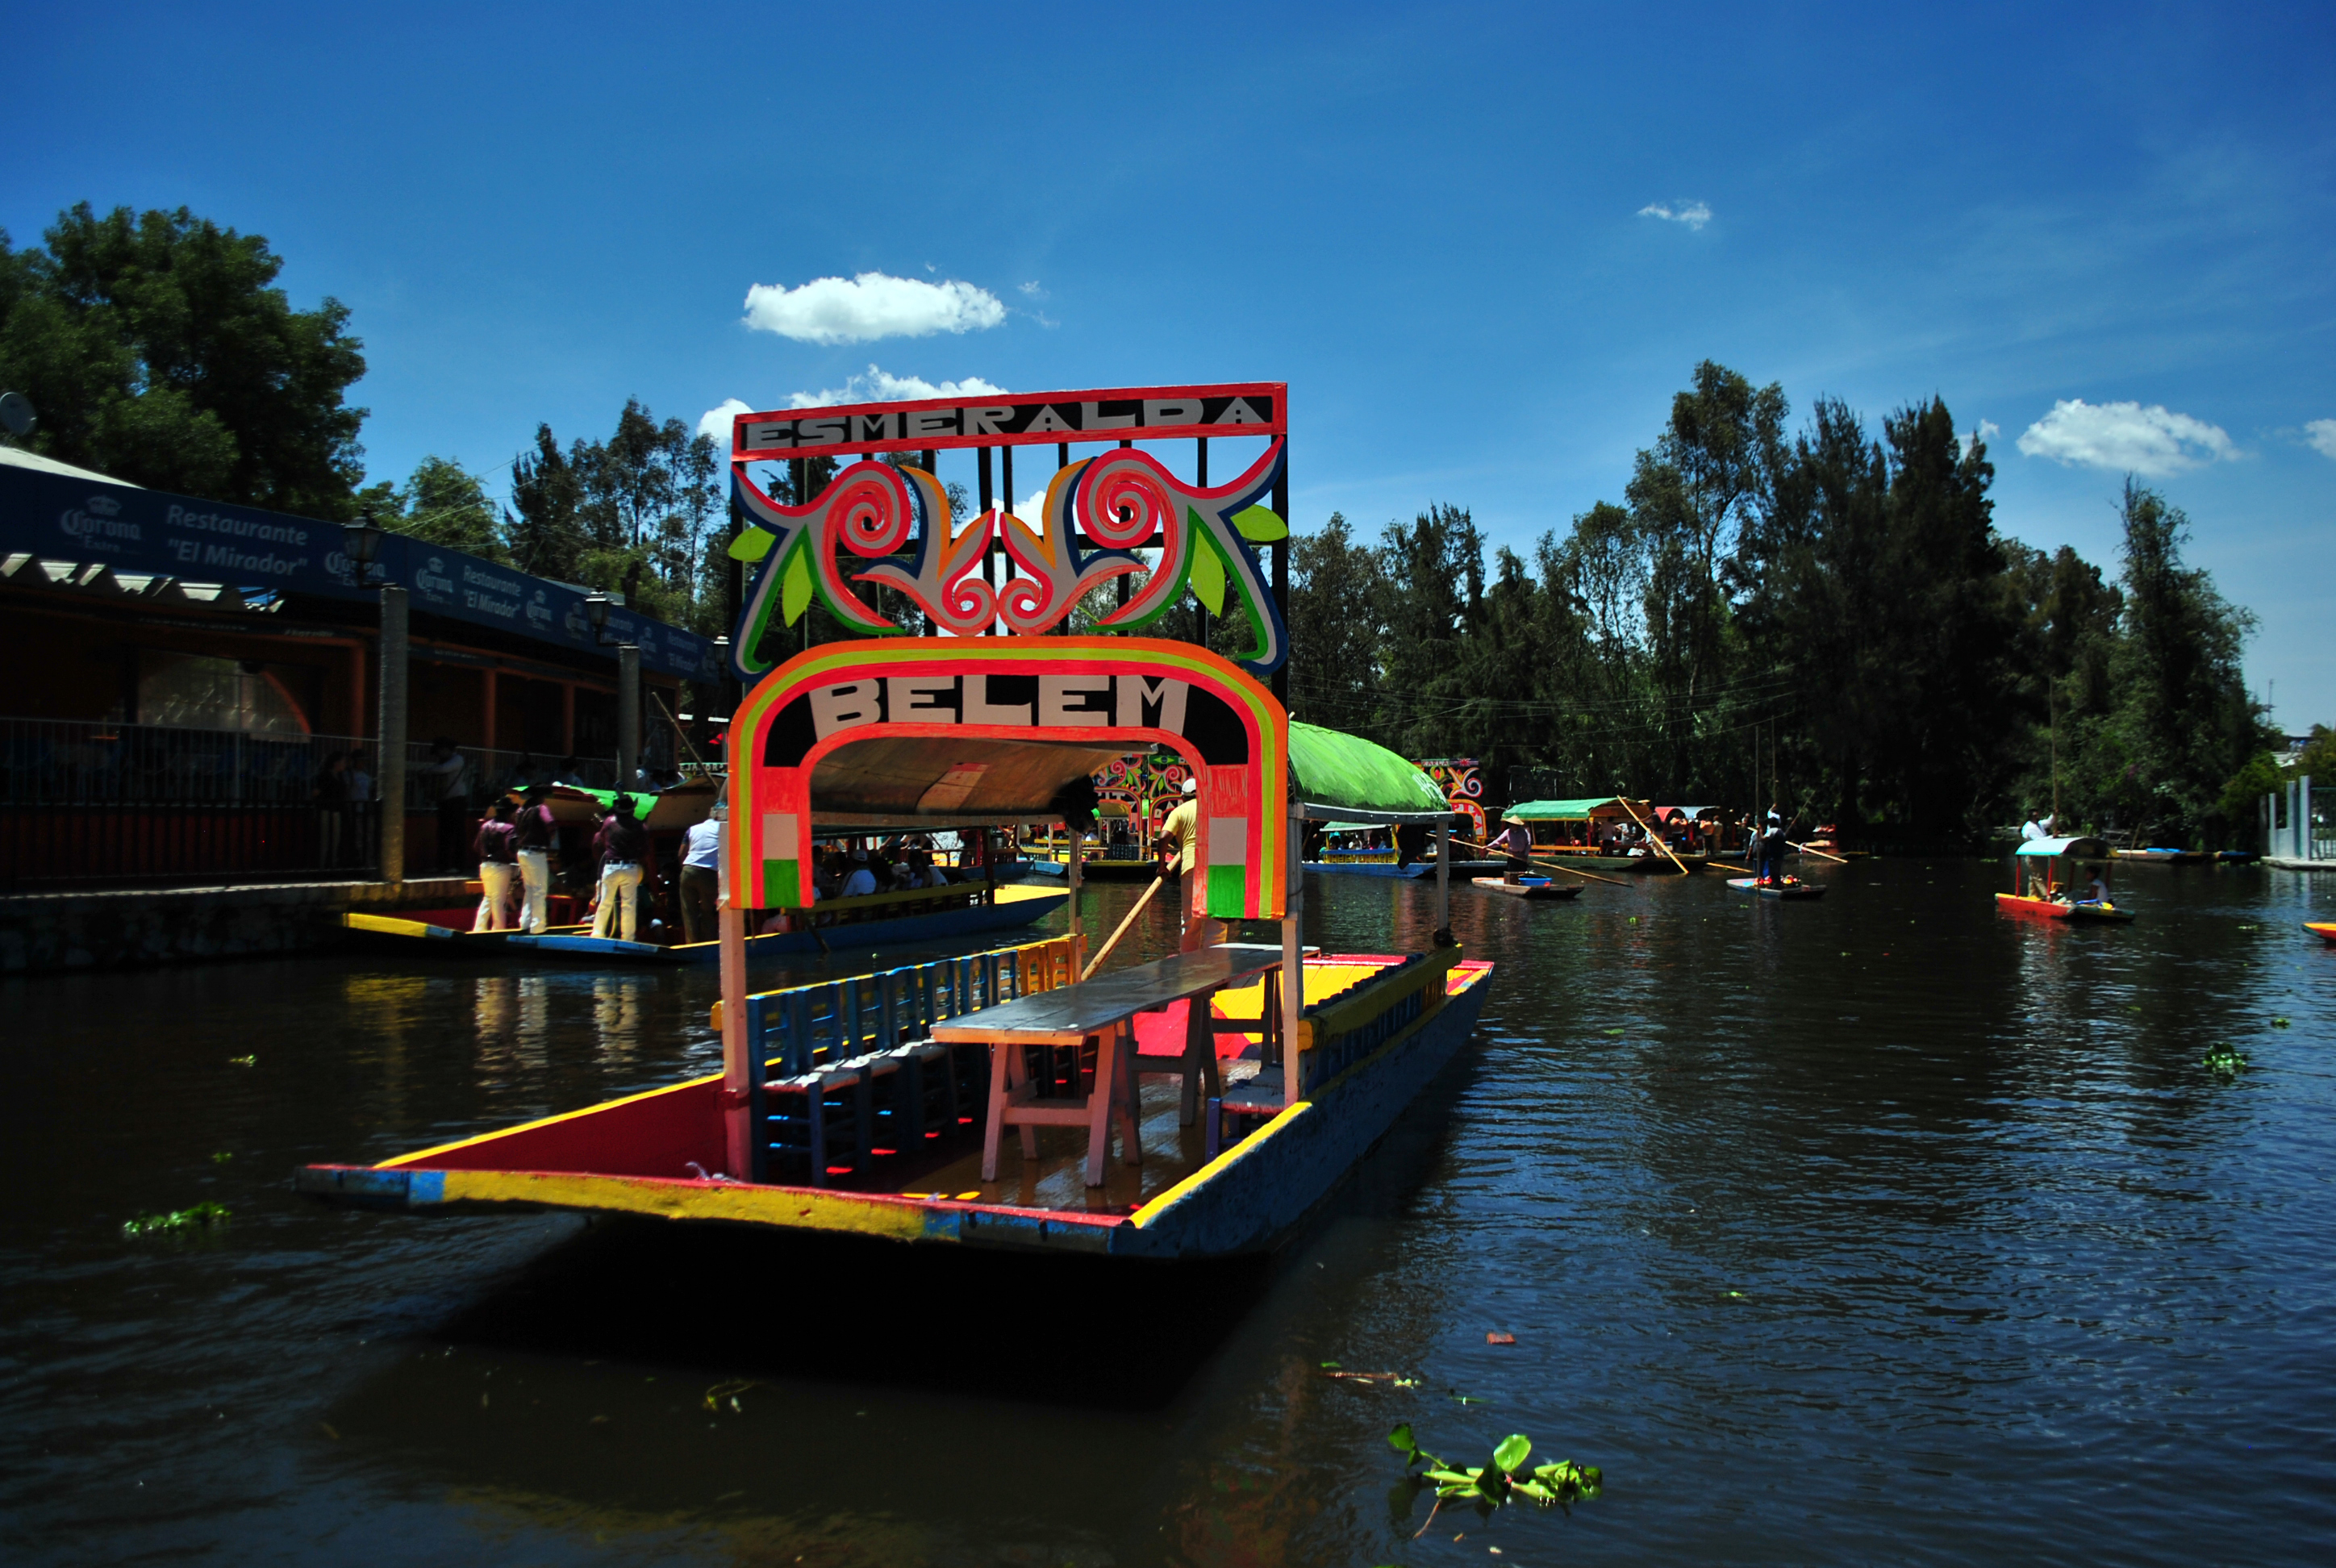 Trajinera en los canales de Xochimilco.